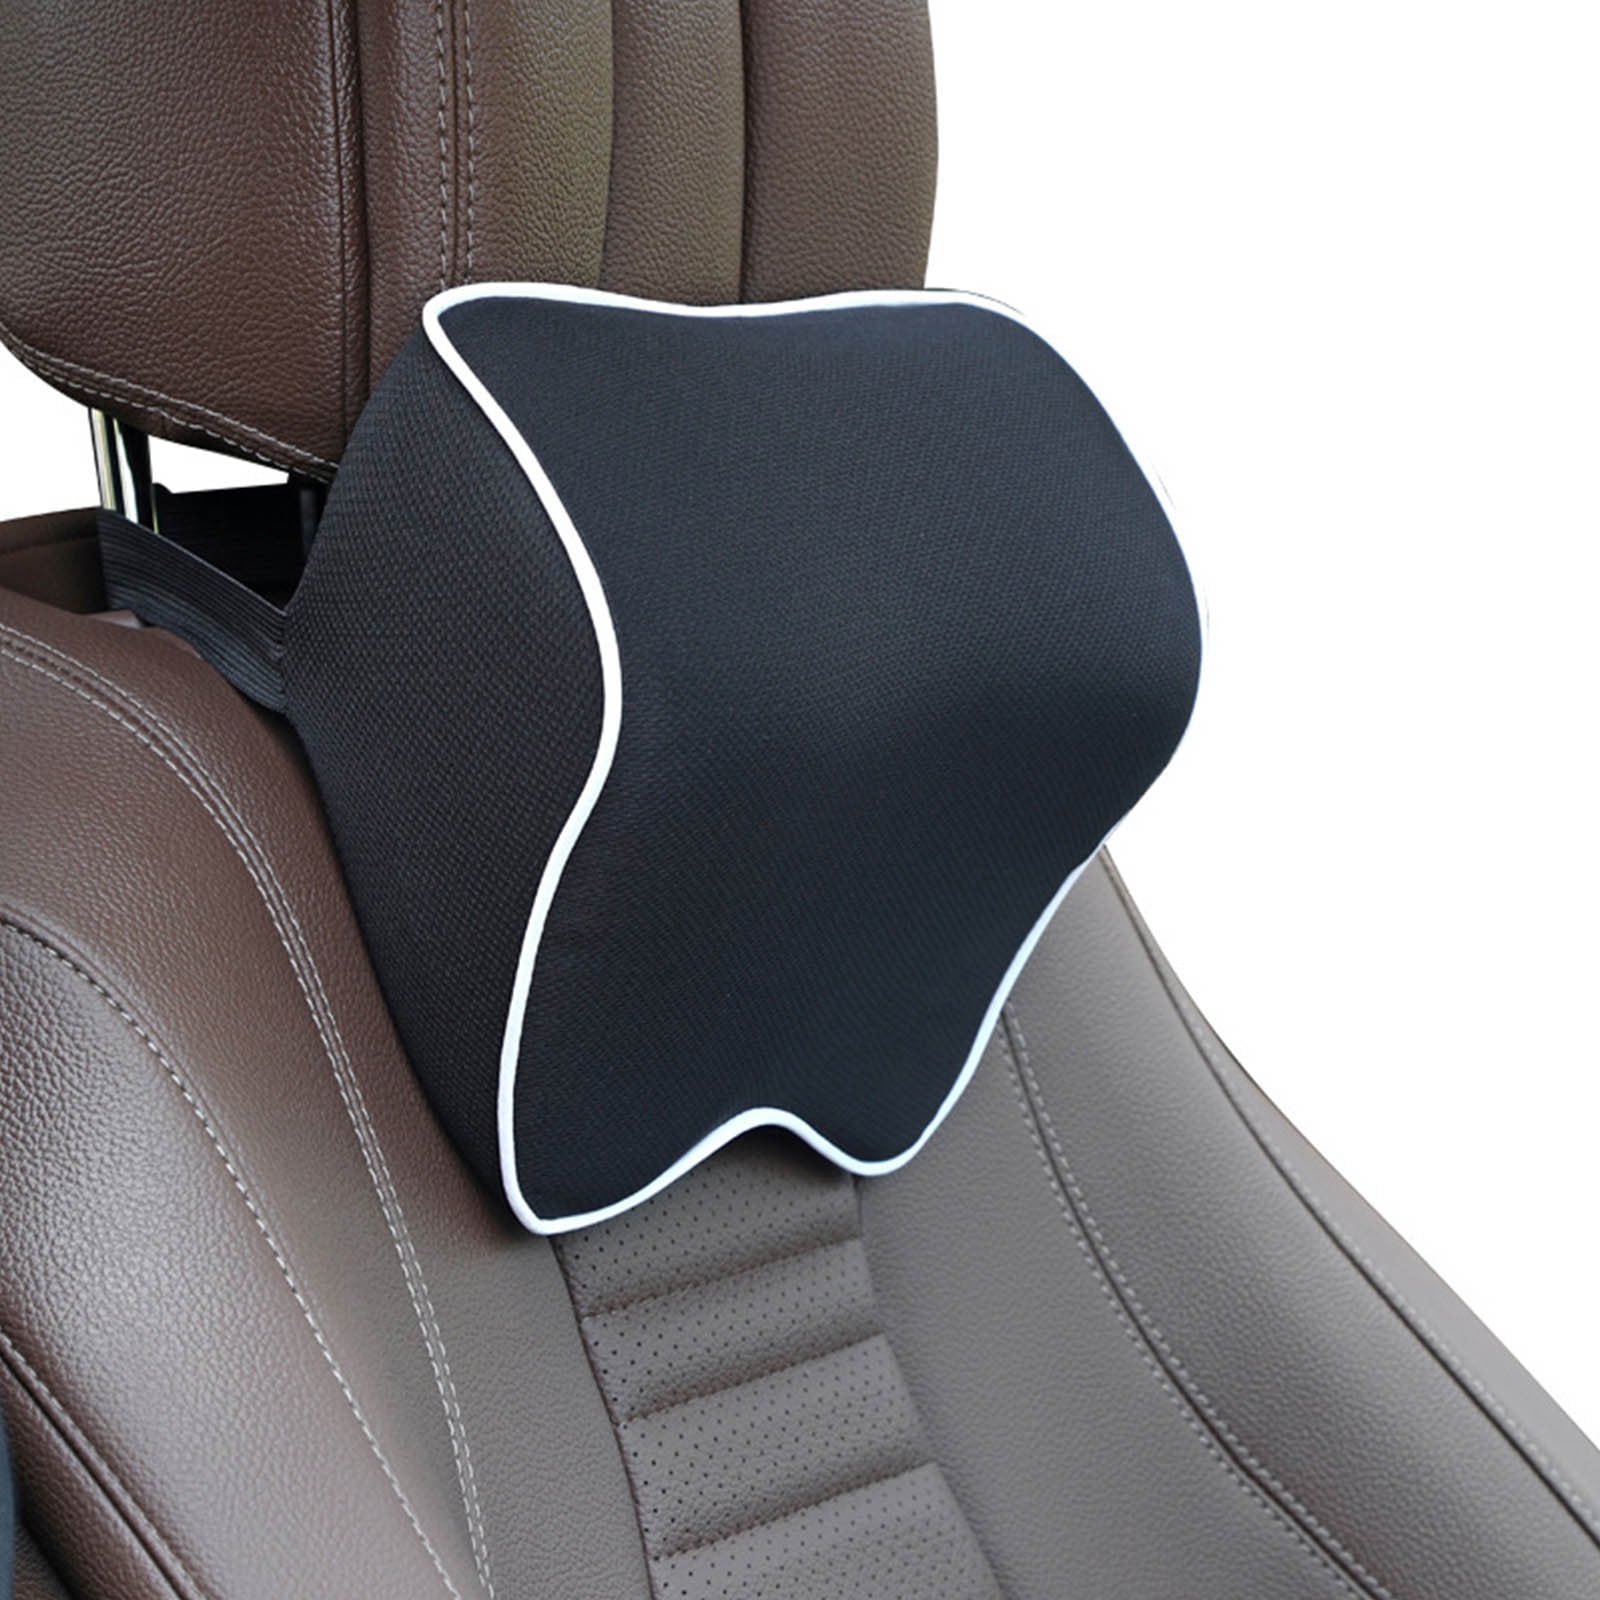 Qepwscx Car Neck Pillows,Softness Car Headrest Pillows for Driving